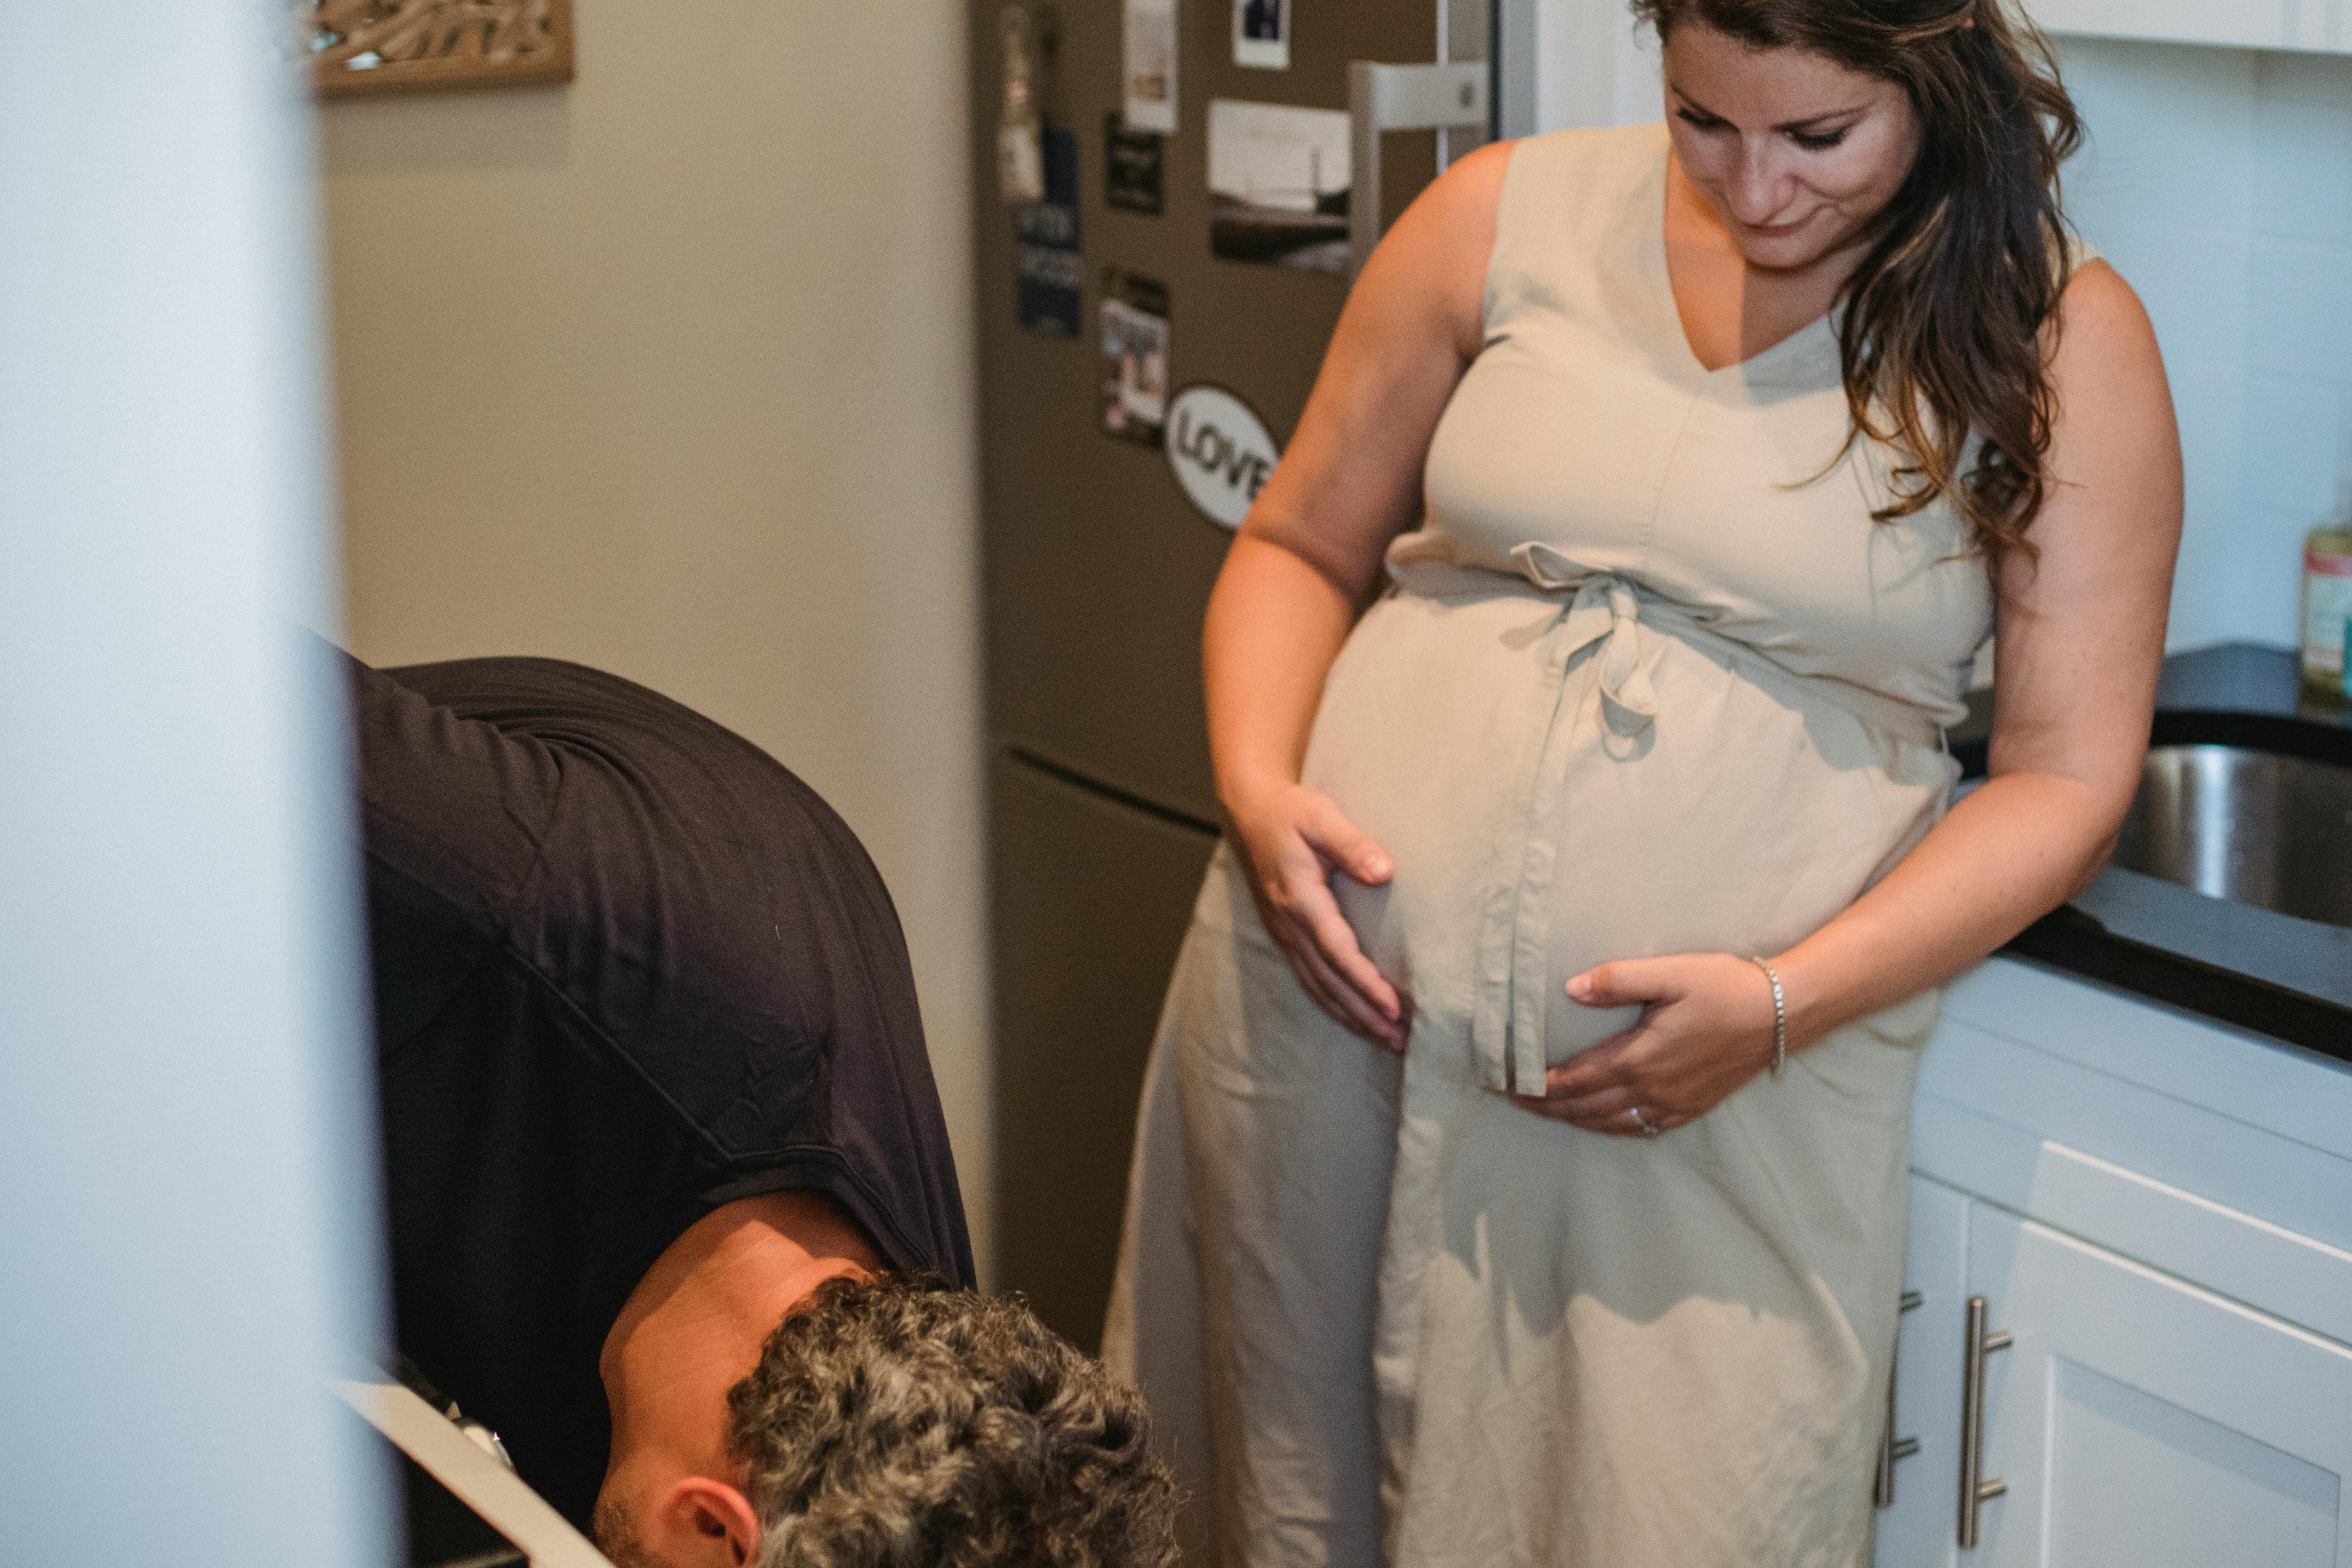 Eine schwangere Frau, die ihren Bauch berührt, während sie ihren Mann ansieht | Quelle: Pexels